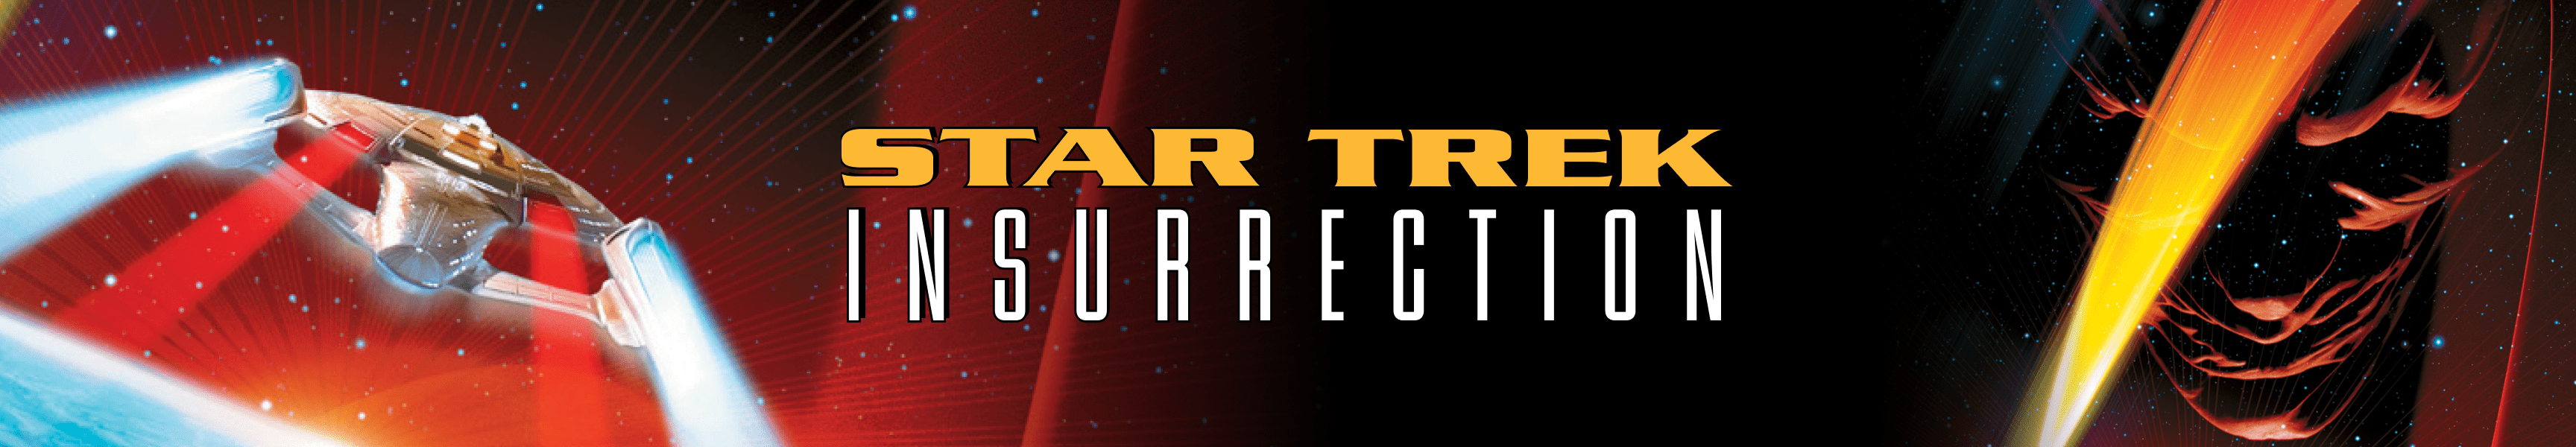 Star Trek Aufruhr